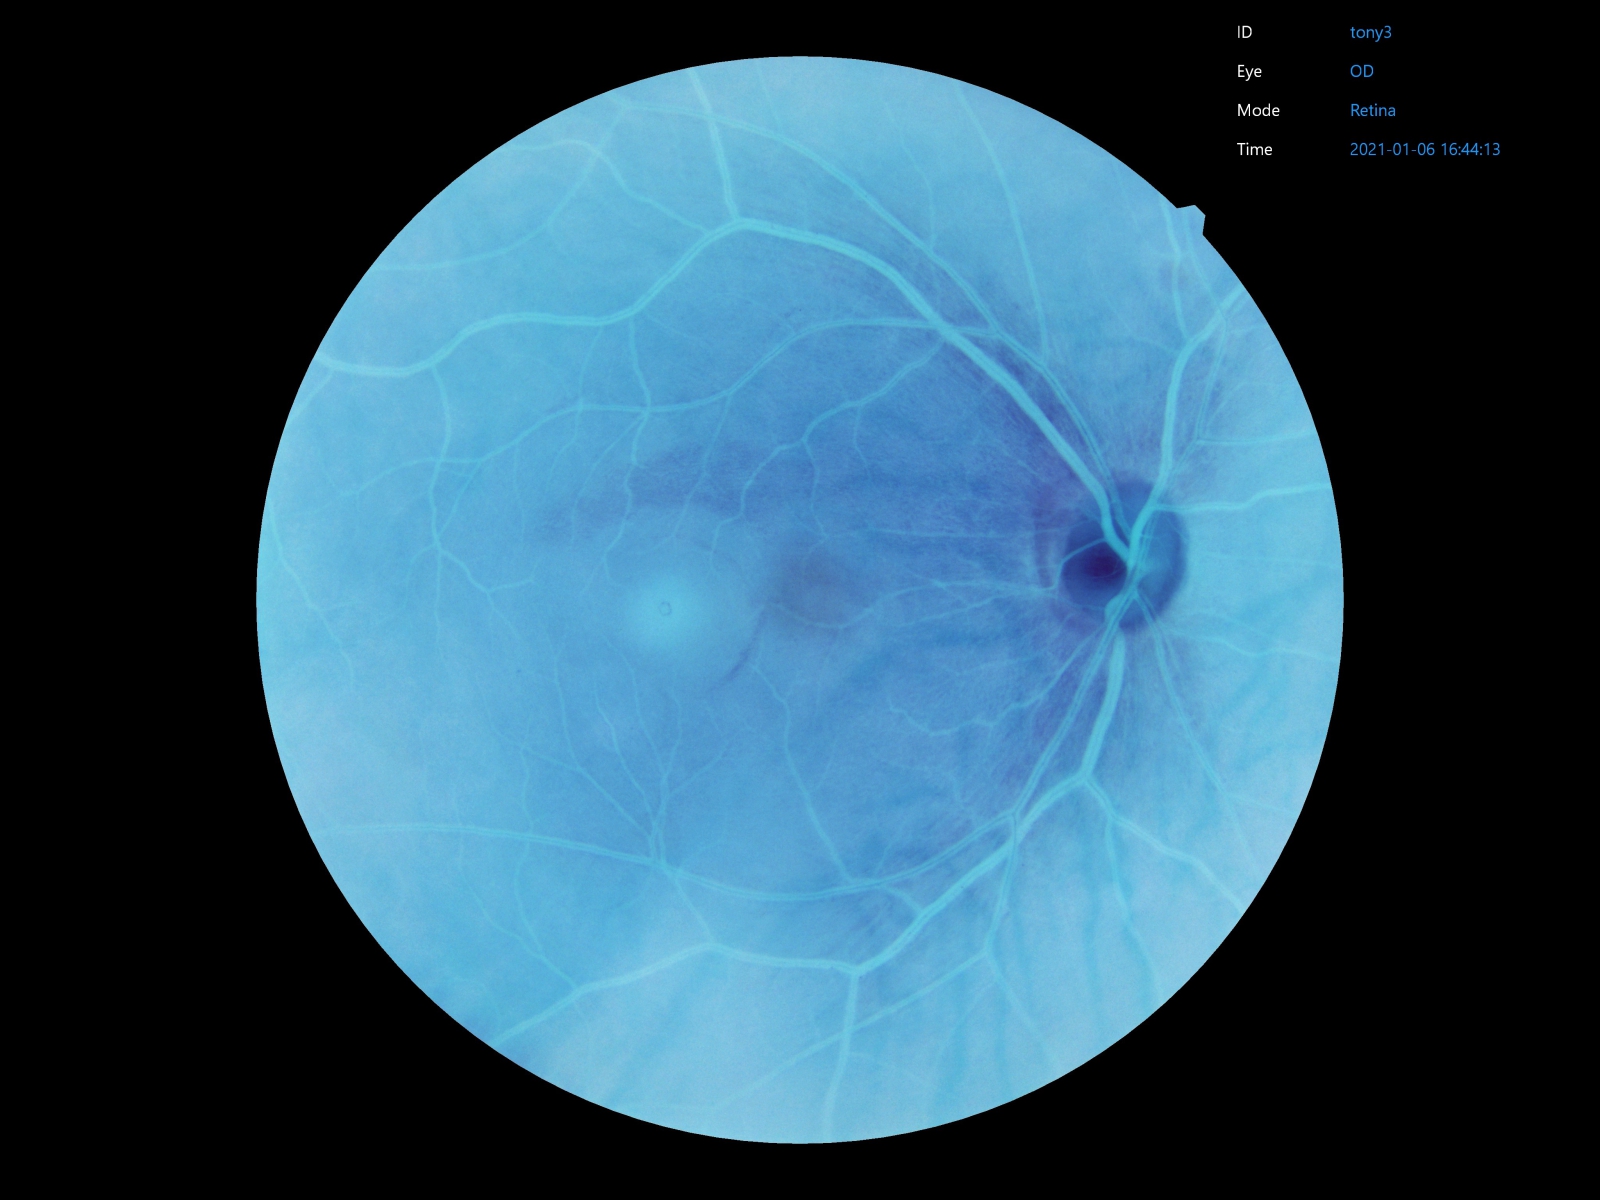 La cámara retiniana Crystalvue proporciona filtros integrados para imágenes retinianas